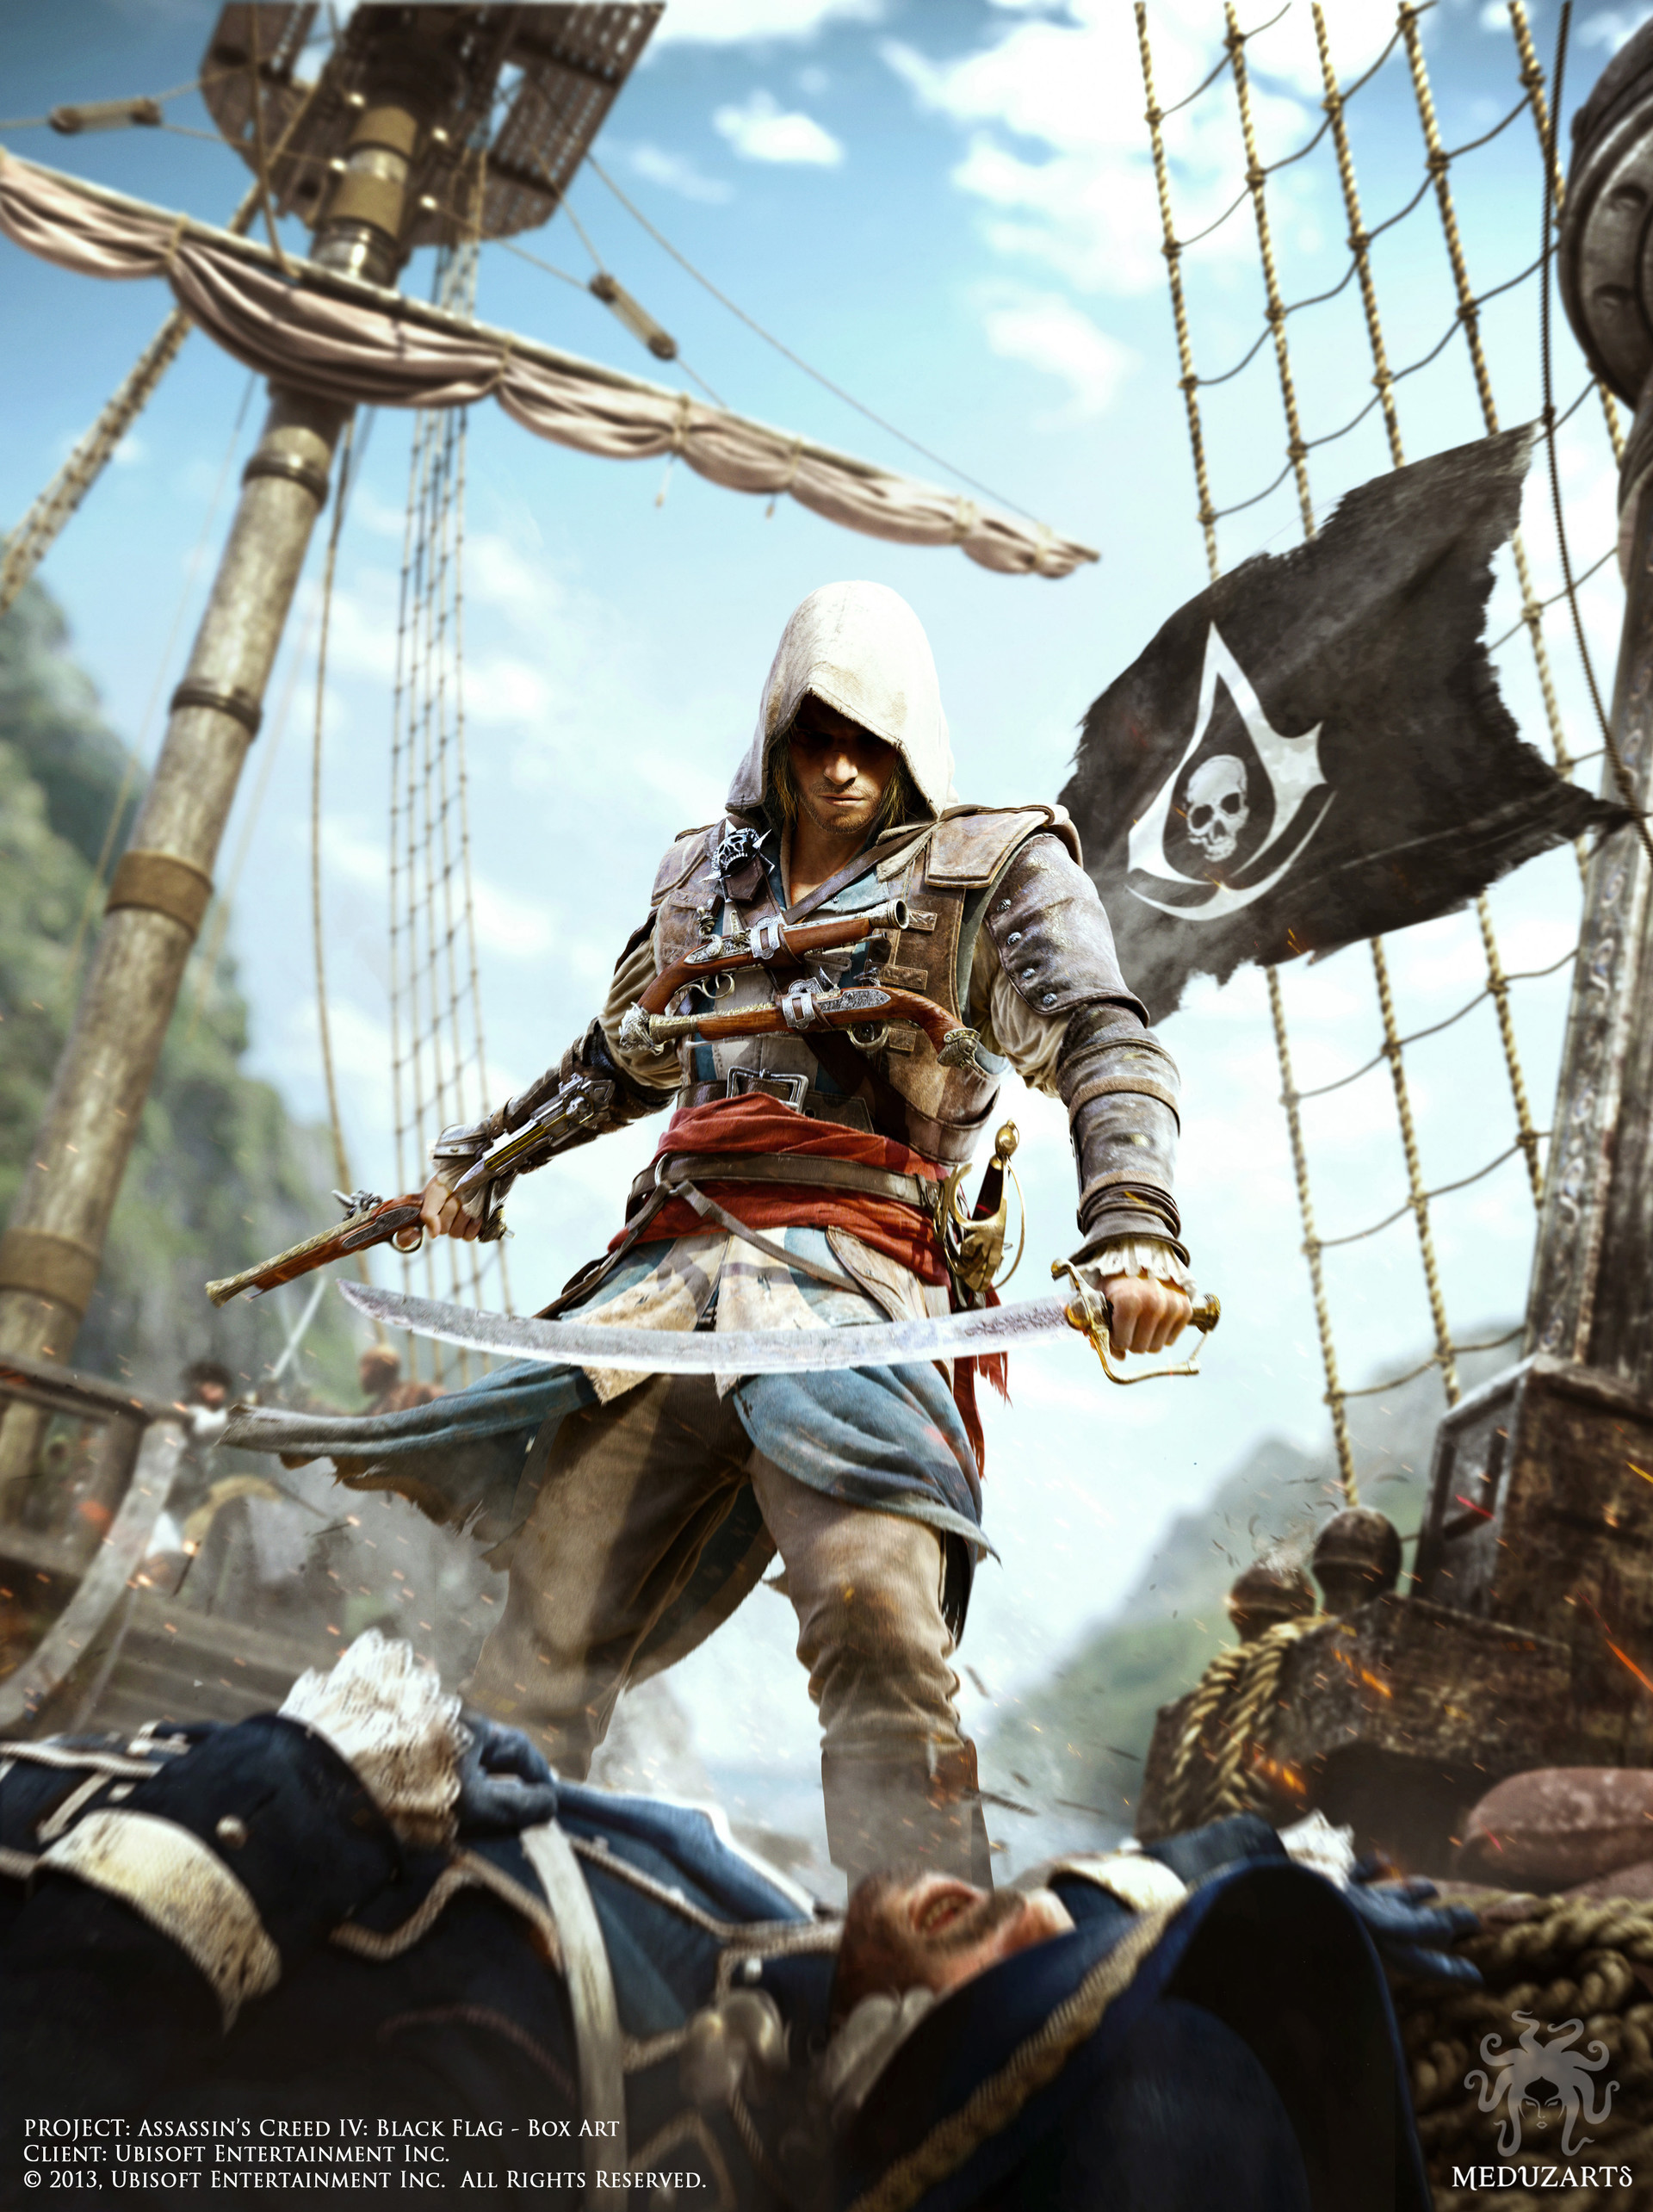 Assasın creed 4. Assassin's Creed 4 Black Flag Постер. Ассасин Крид 4 черный флаг. Асасин креда 4чёрный флак.